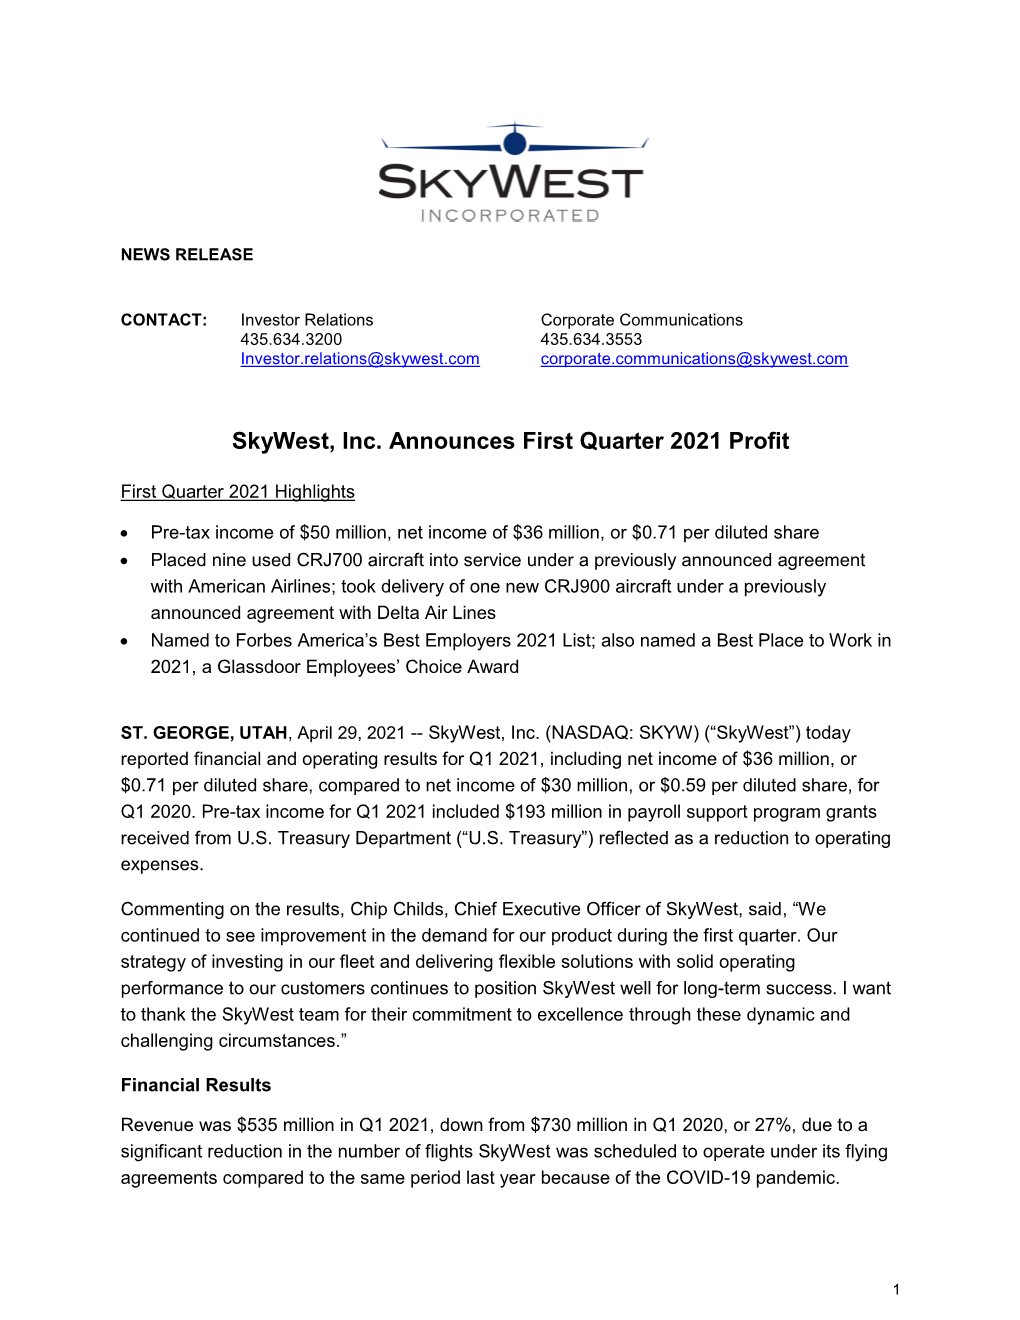 Skywest, Inc. Announces First Quarter 2021 Profit